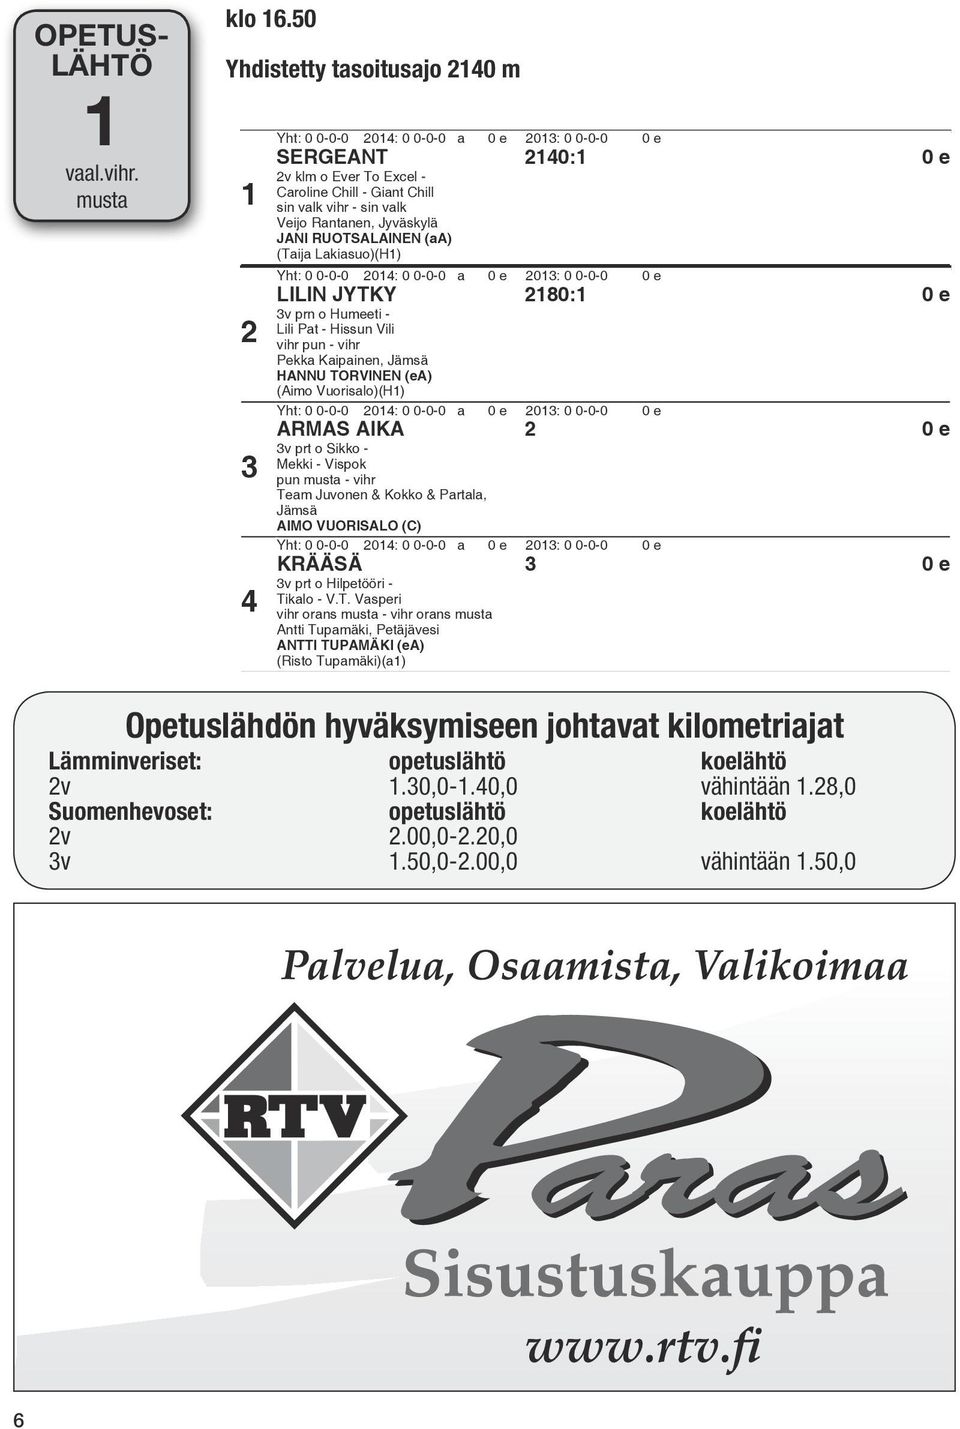 (Taija Lakiasuo)(H) Yht: 0 0-0-0 04: 0 0-0-0 a 0 e 03: 0 0-0-0 0 e LILIN JYTKY 80: 0e 3v prn o Humeeti - Lili Pat - Hissun Vili vihr pun - vihr Pekka Kaipainen, Jämsä HANNU TORVINEN (ea) (Aimo